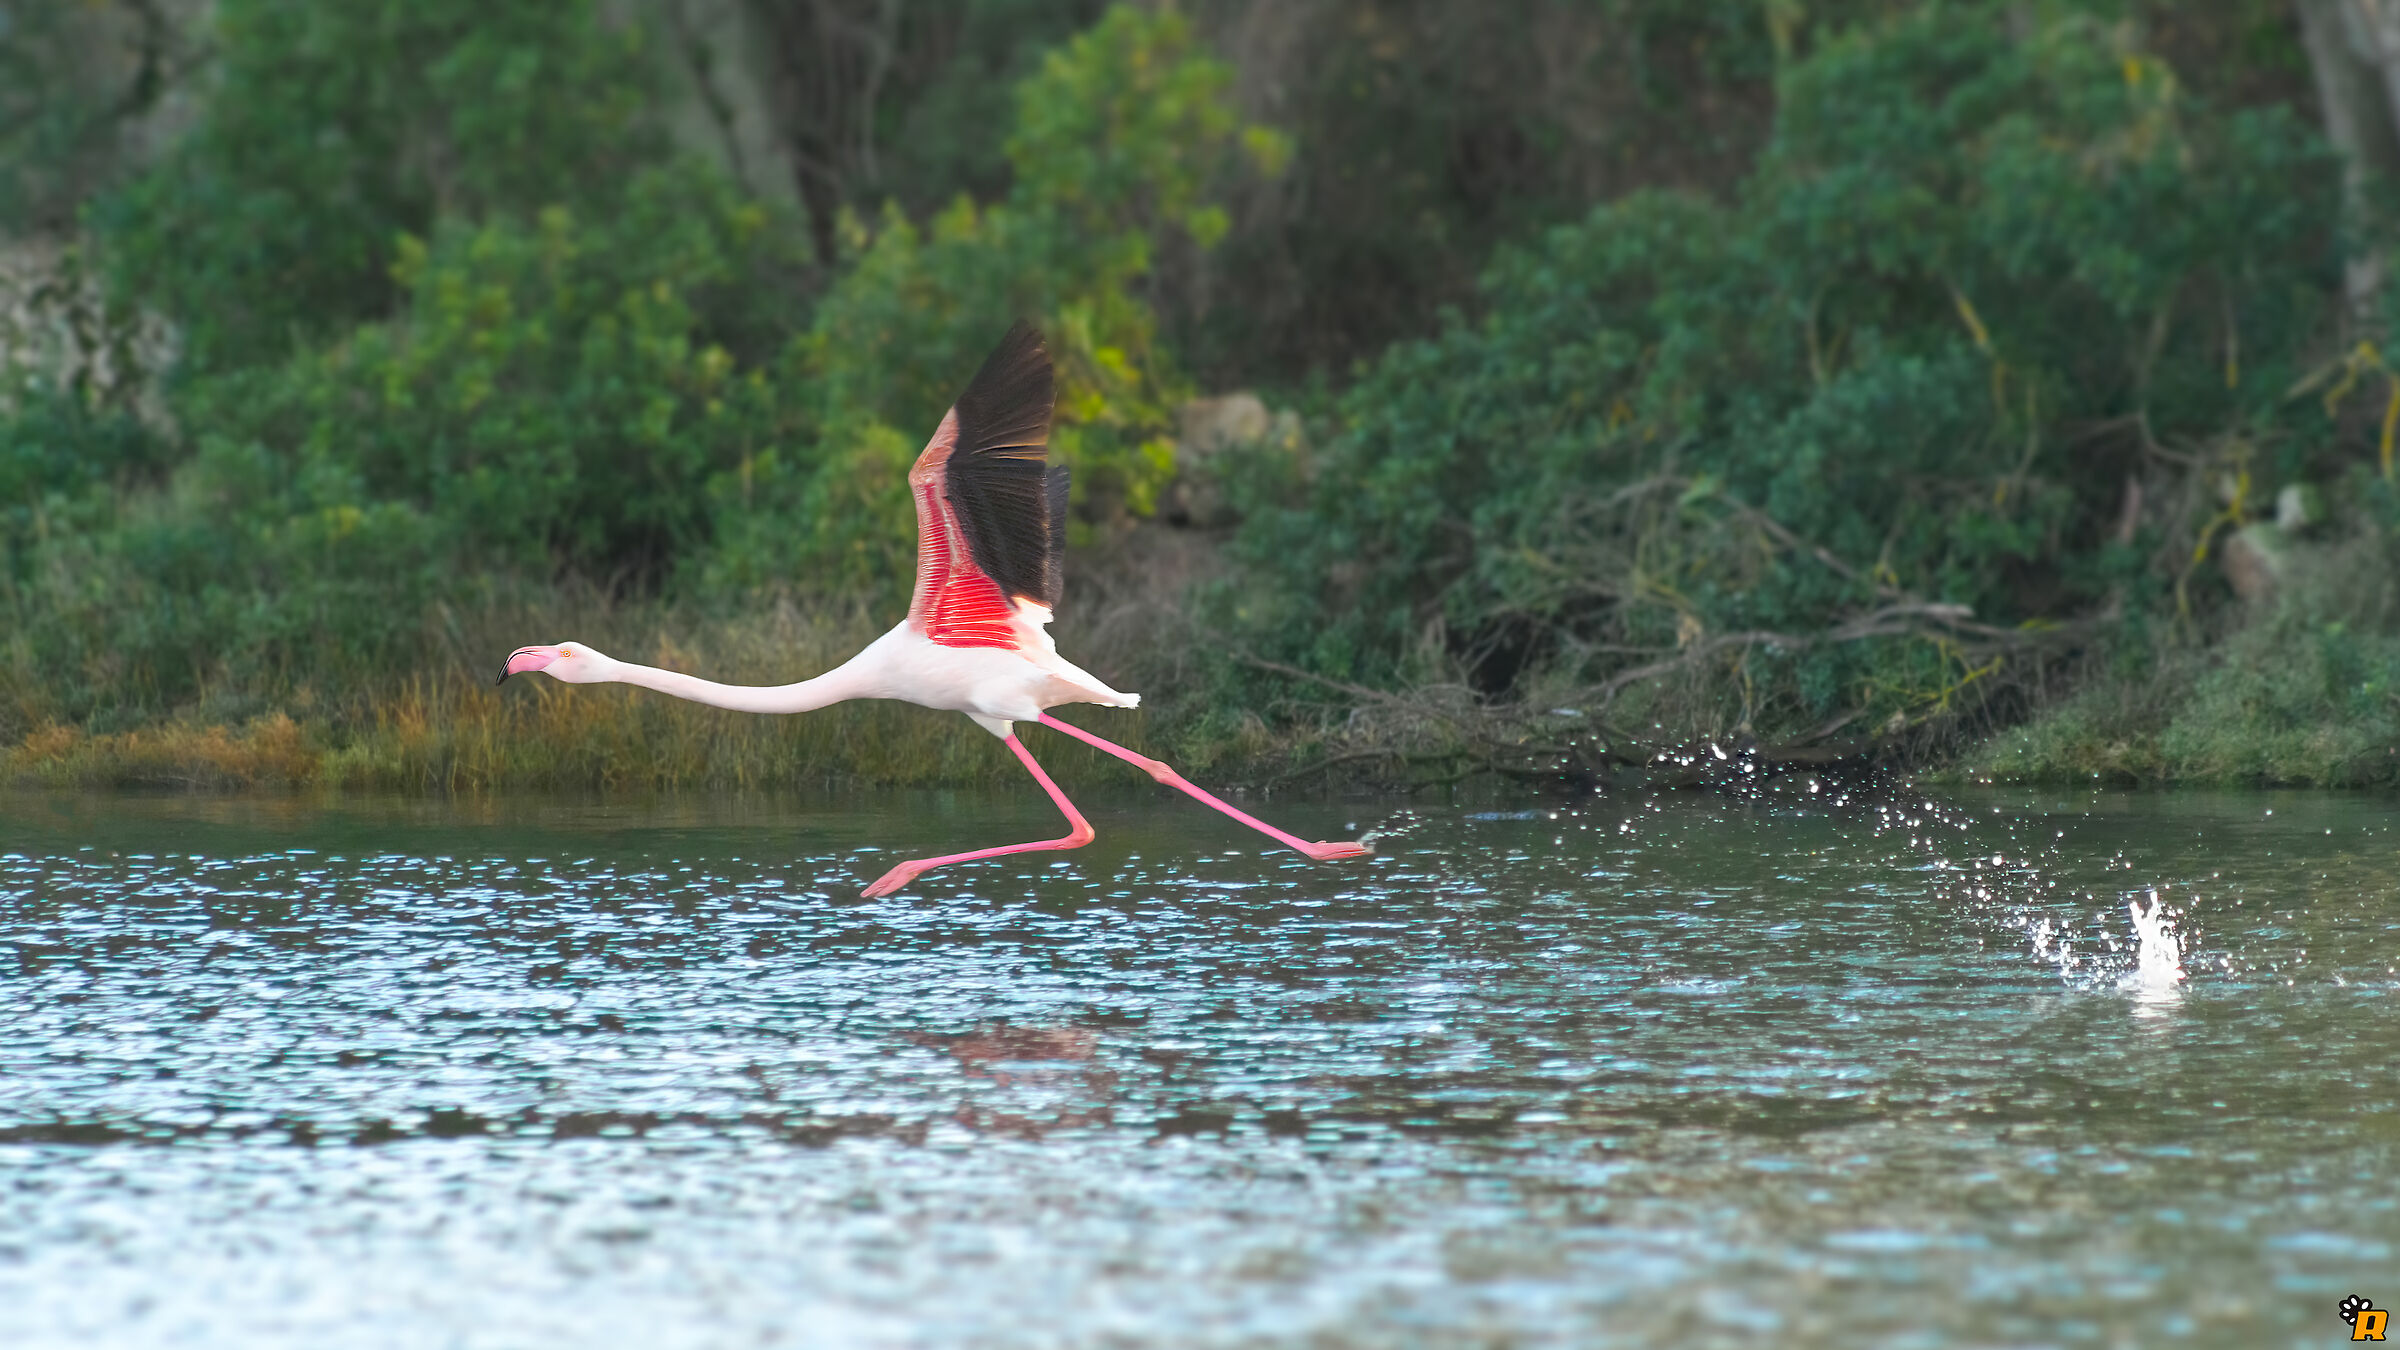 Flamingo on take-off...